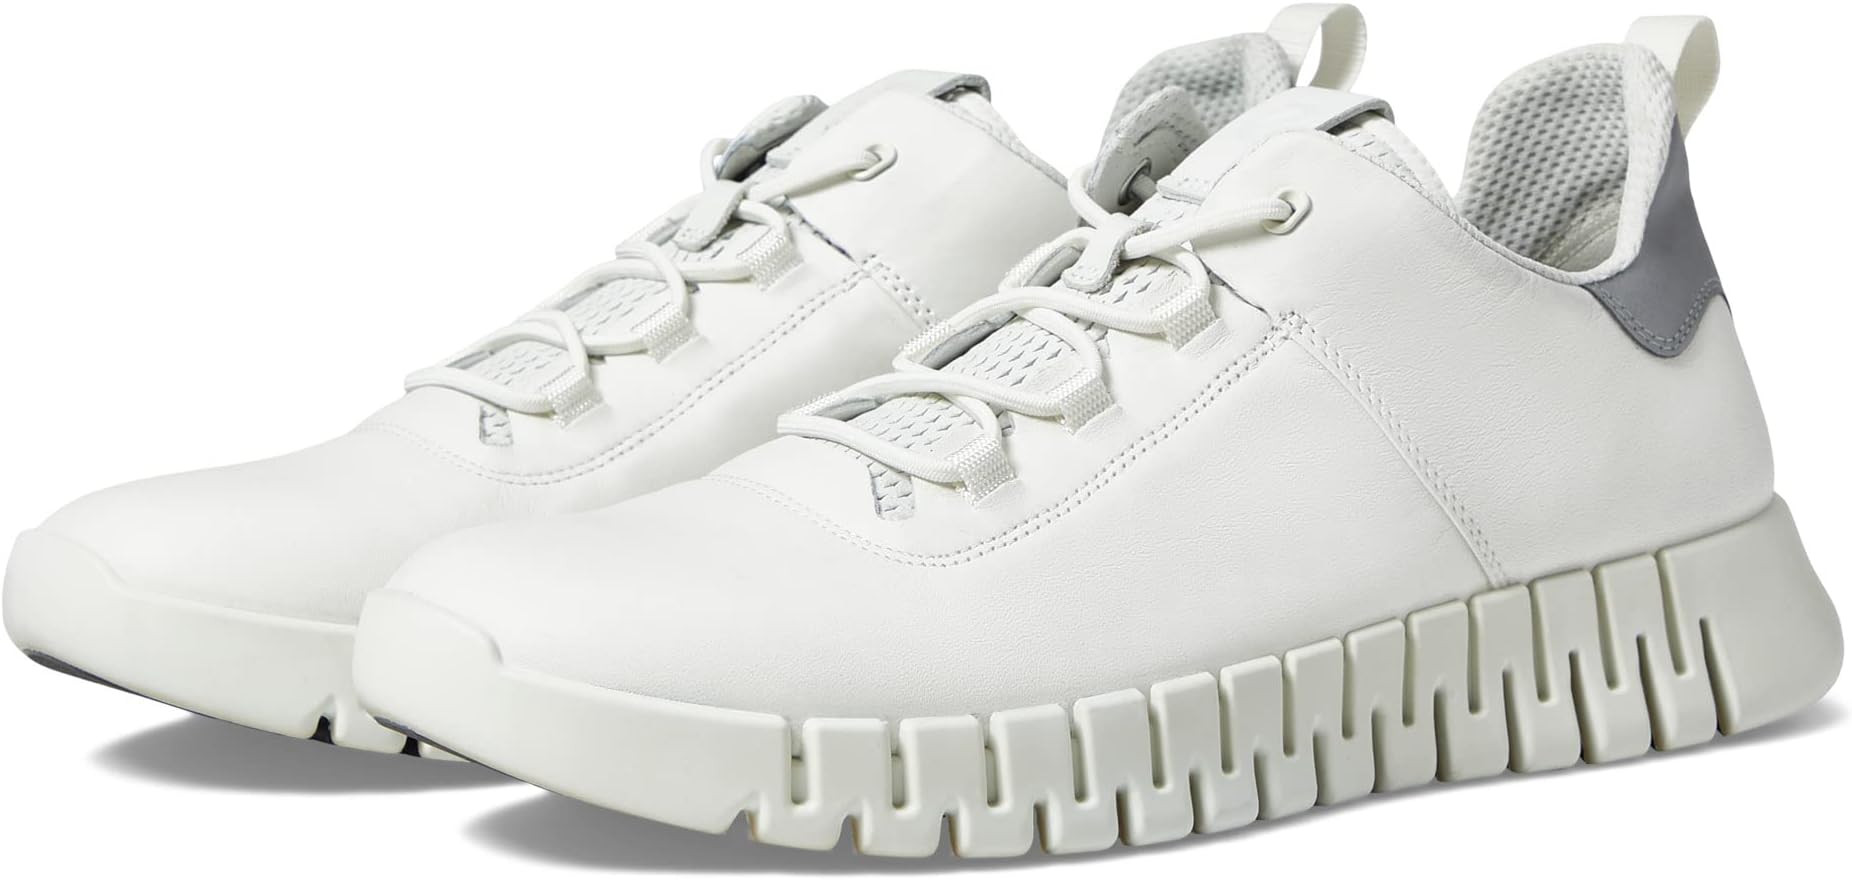 Кроссовки Gruuv Sneaker ECCO, цвет White/White кроссовки ecco gruuv sneaker цвет marine marine